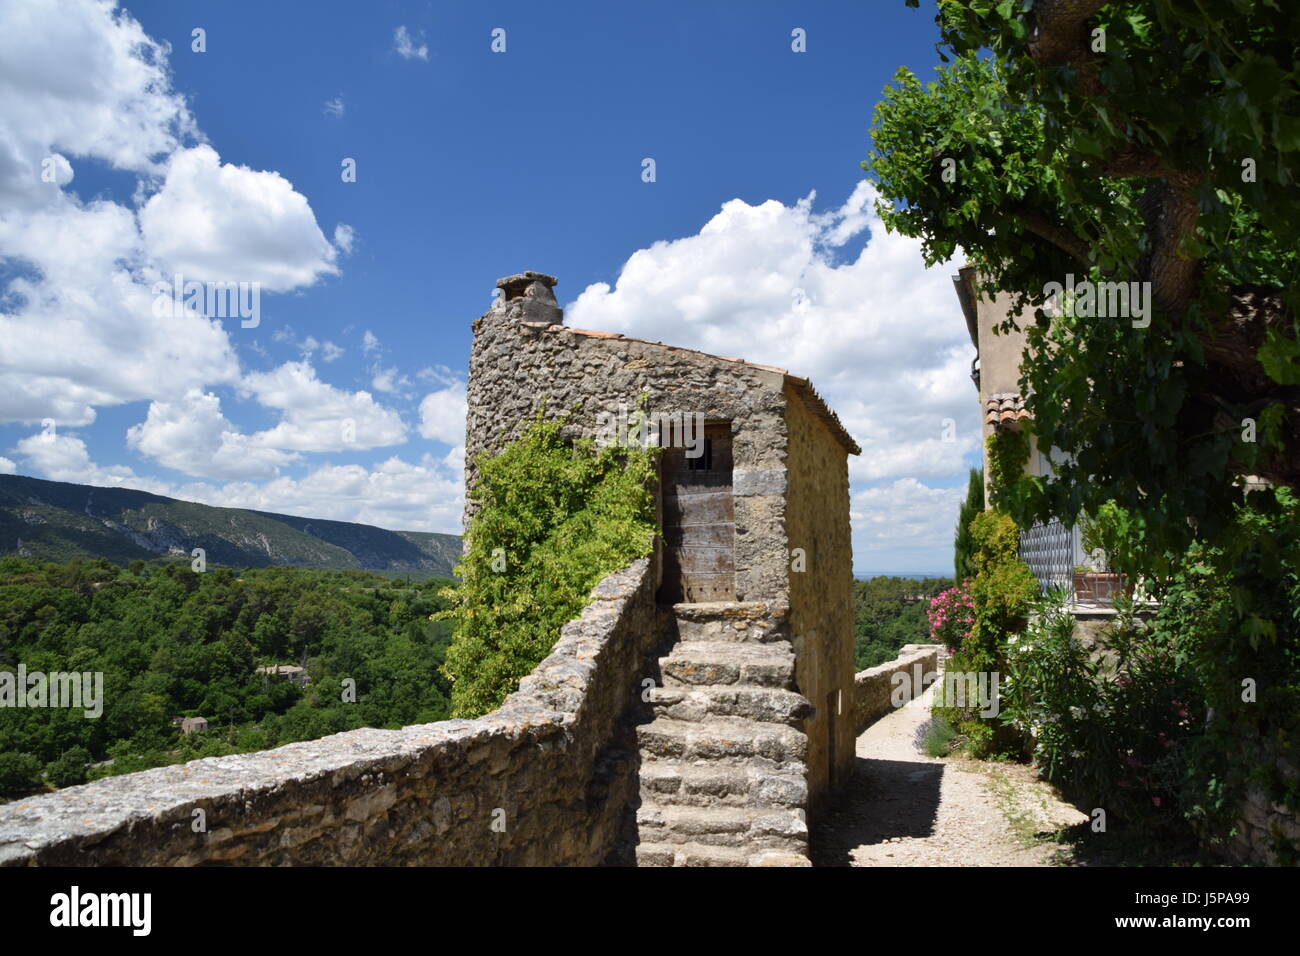 Le village de Menerbes et la campagne environnante du Luberon en Provence, France Banque D'Images